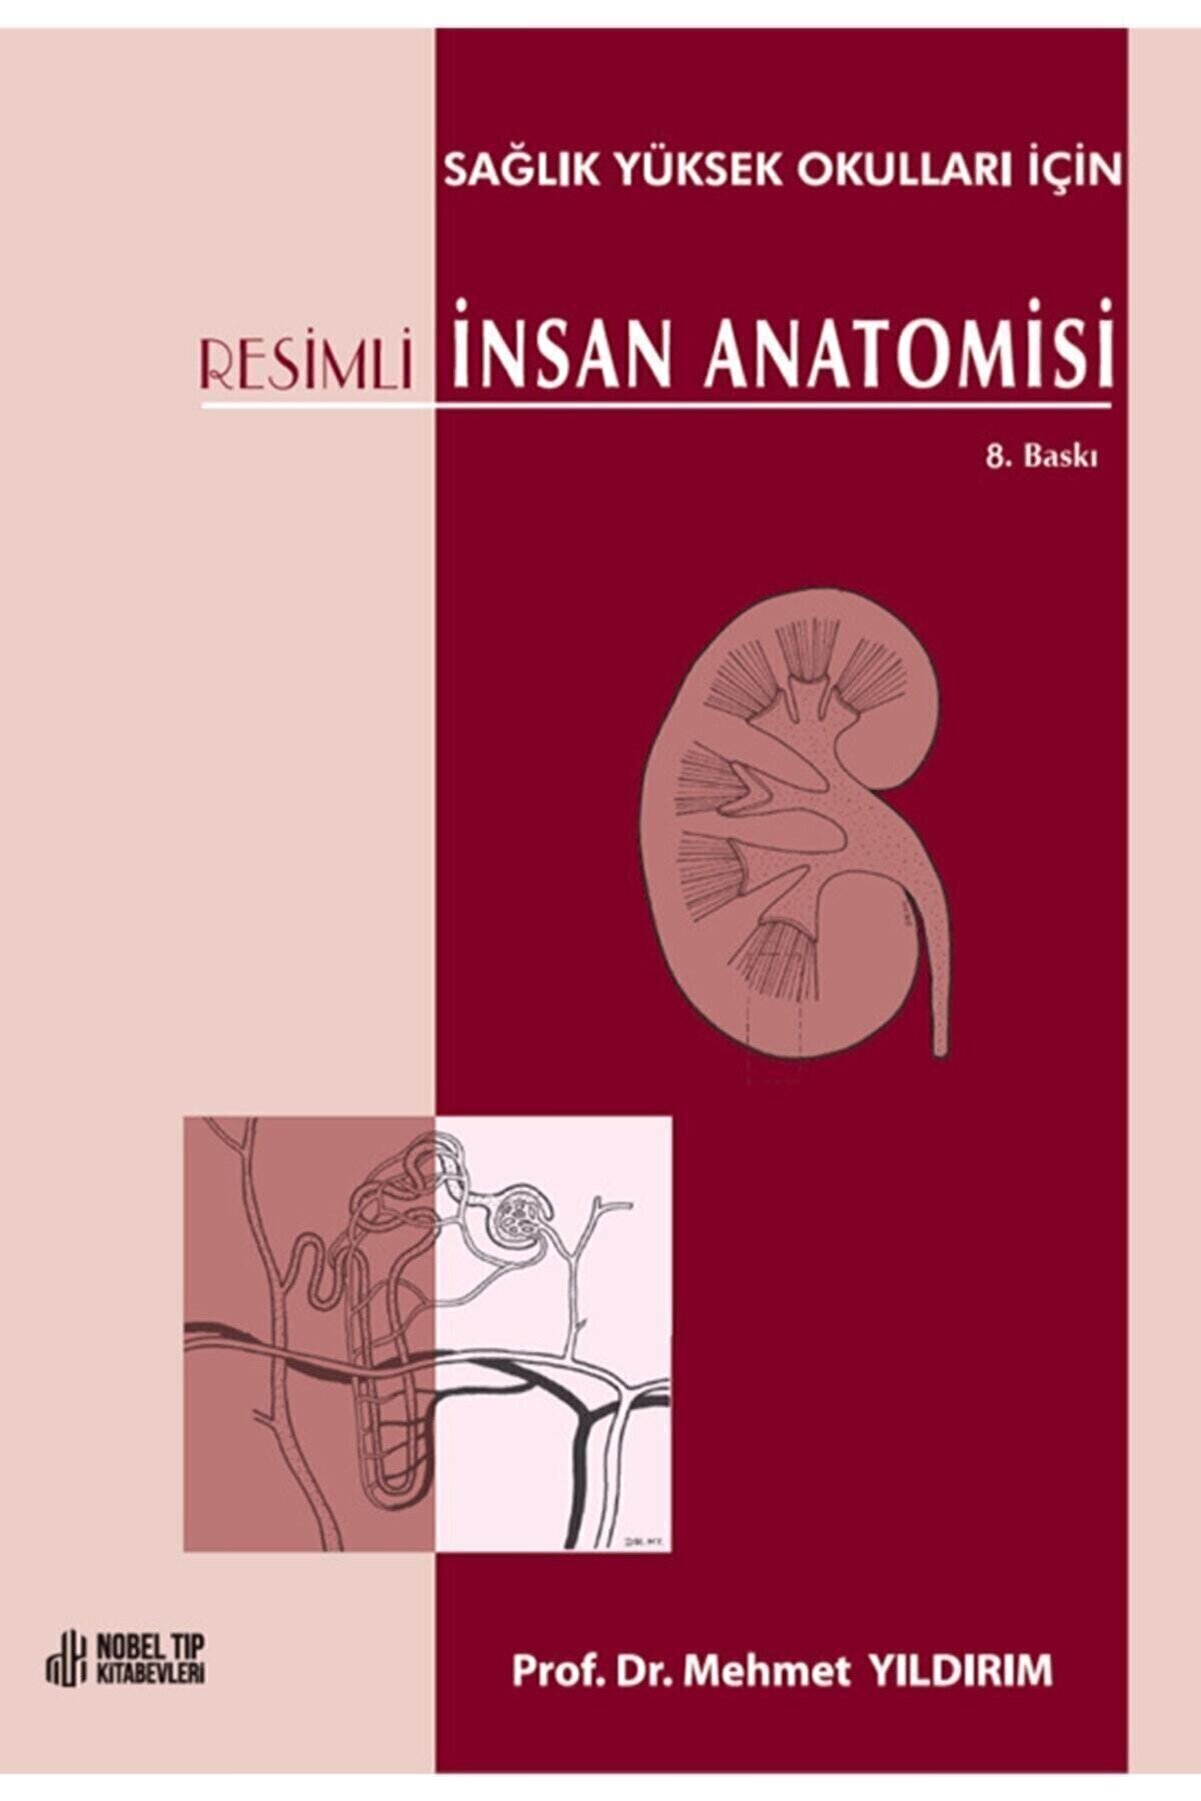 Nobel Tıp Kitabevi Resimli Insan Anatomisi: Sağlık Yüksek Okulları Için 8. Baskı